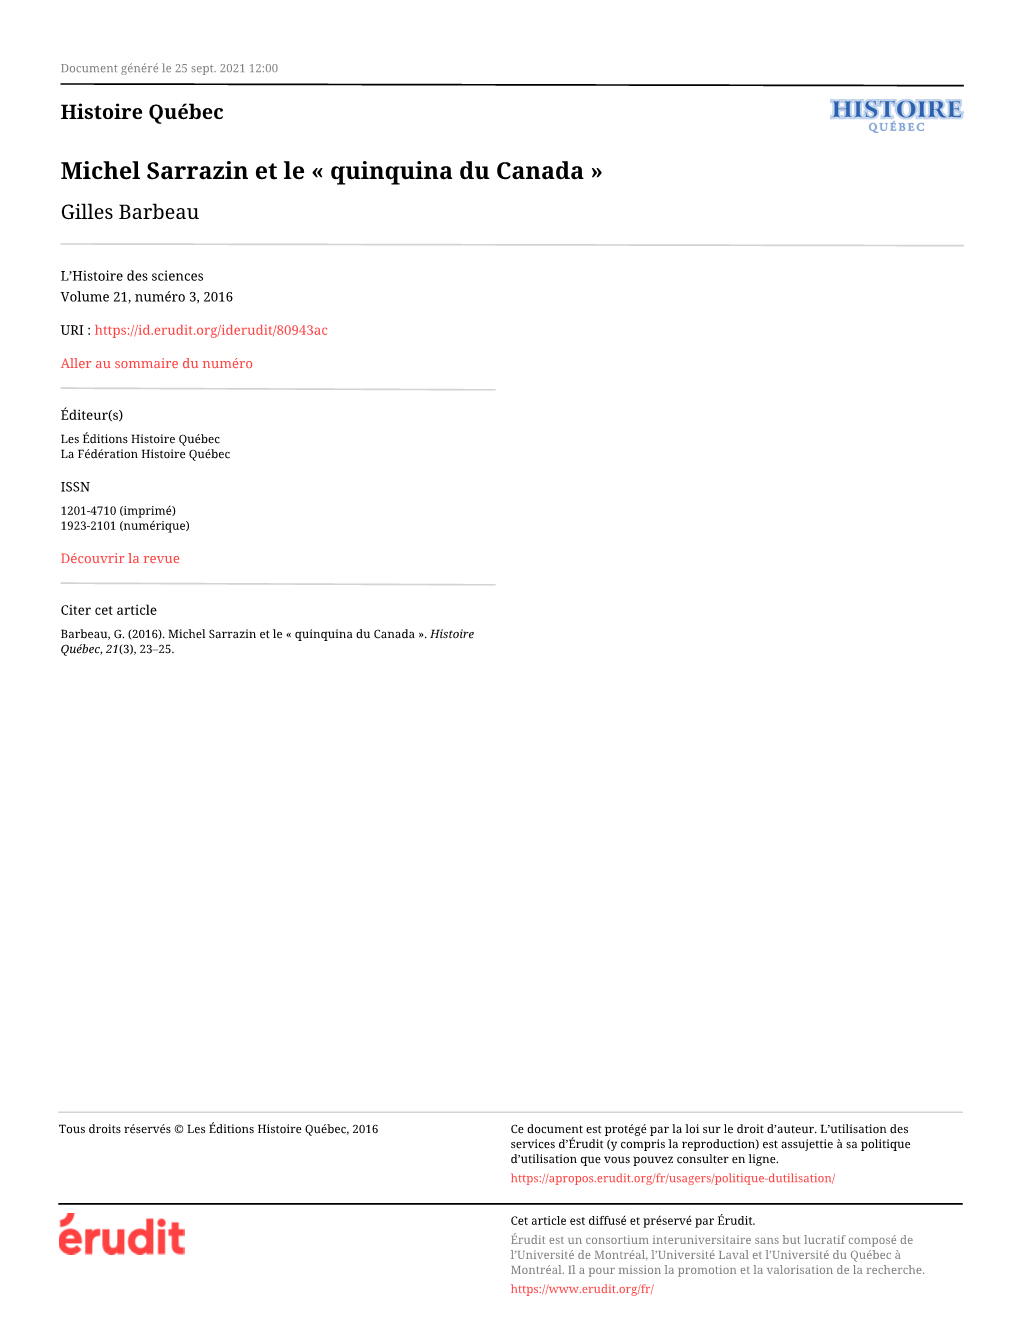 Michel Sarrazin Et Le « Quinquina Du Canada » Gilles Barbeau